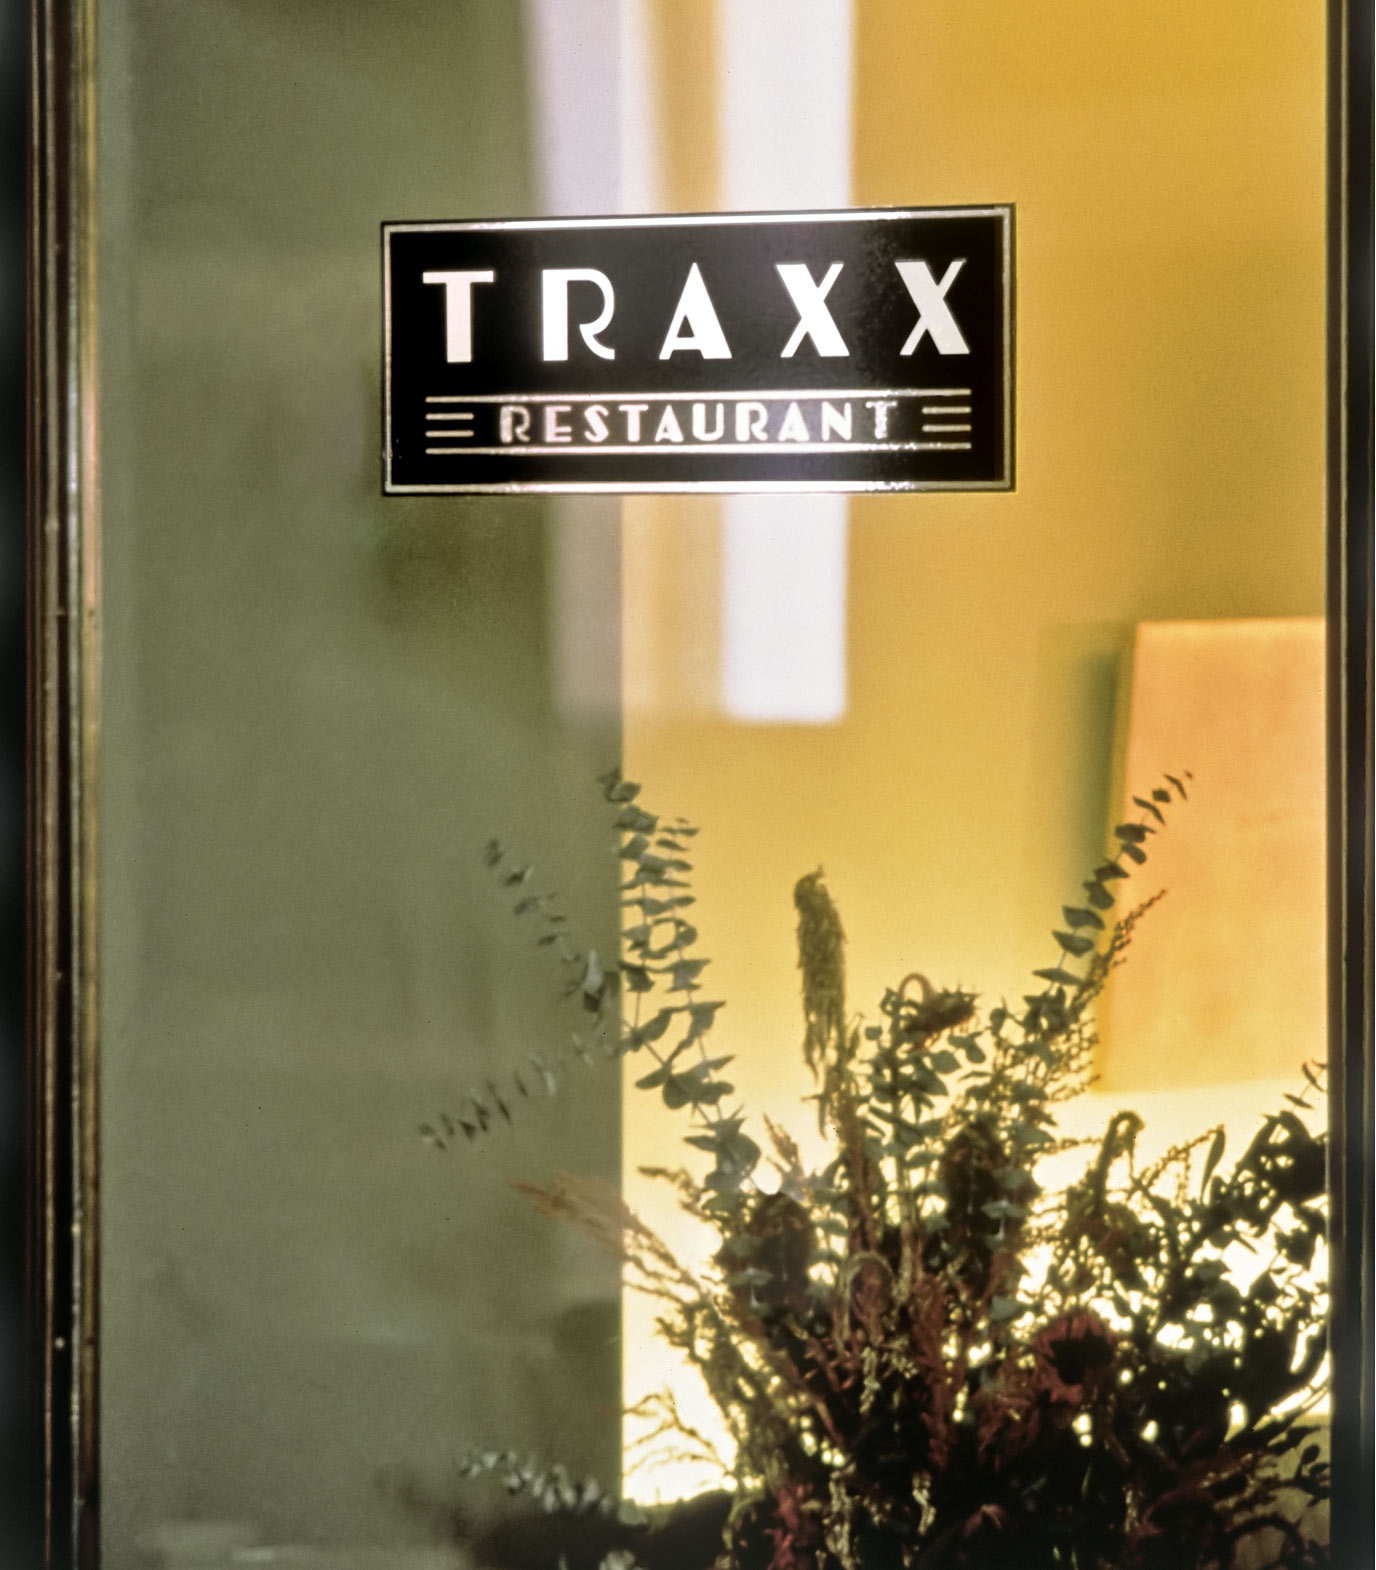 Traxx Restaurant window signage